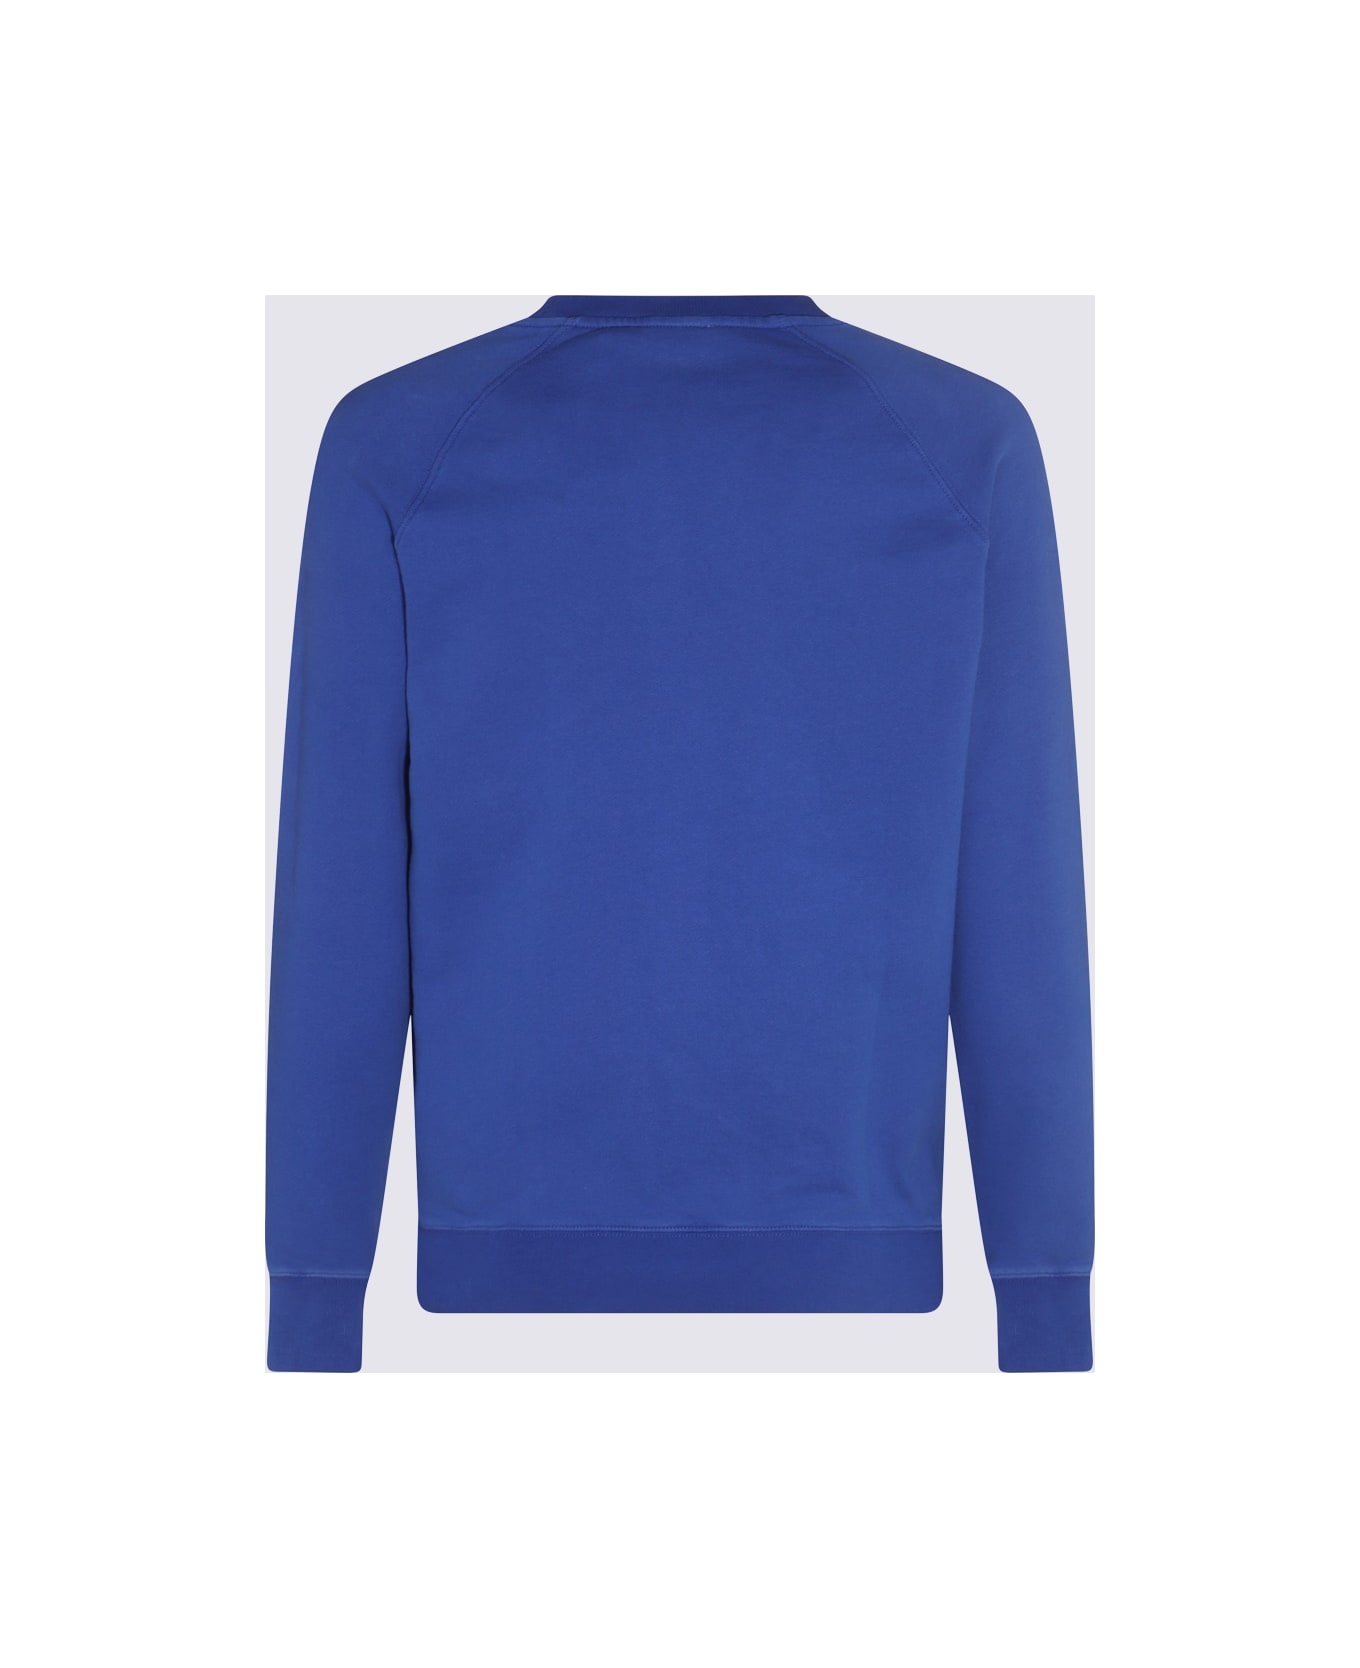 Maison Kitsuné Deep Blue Cotton Sweatshirt - DEEP BLUE